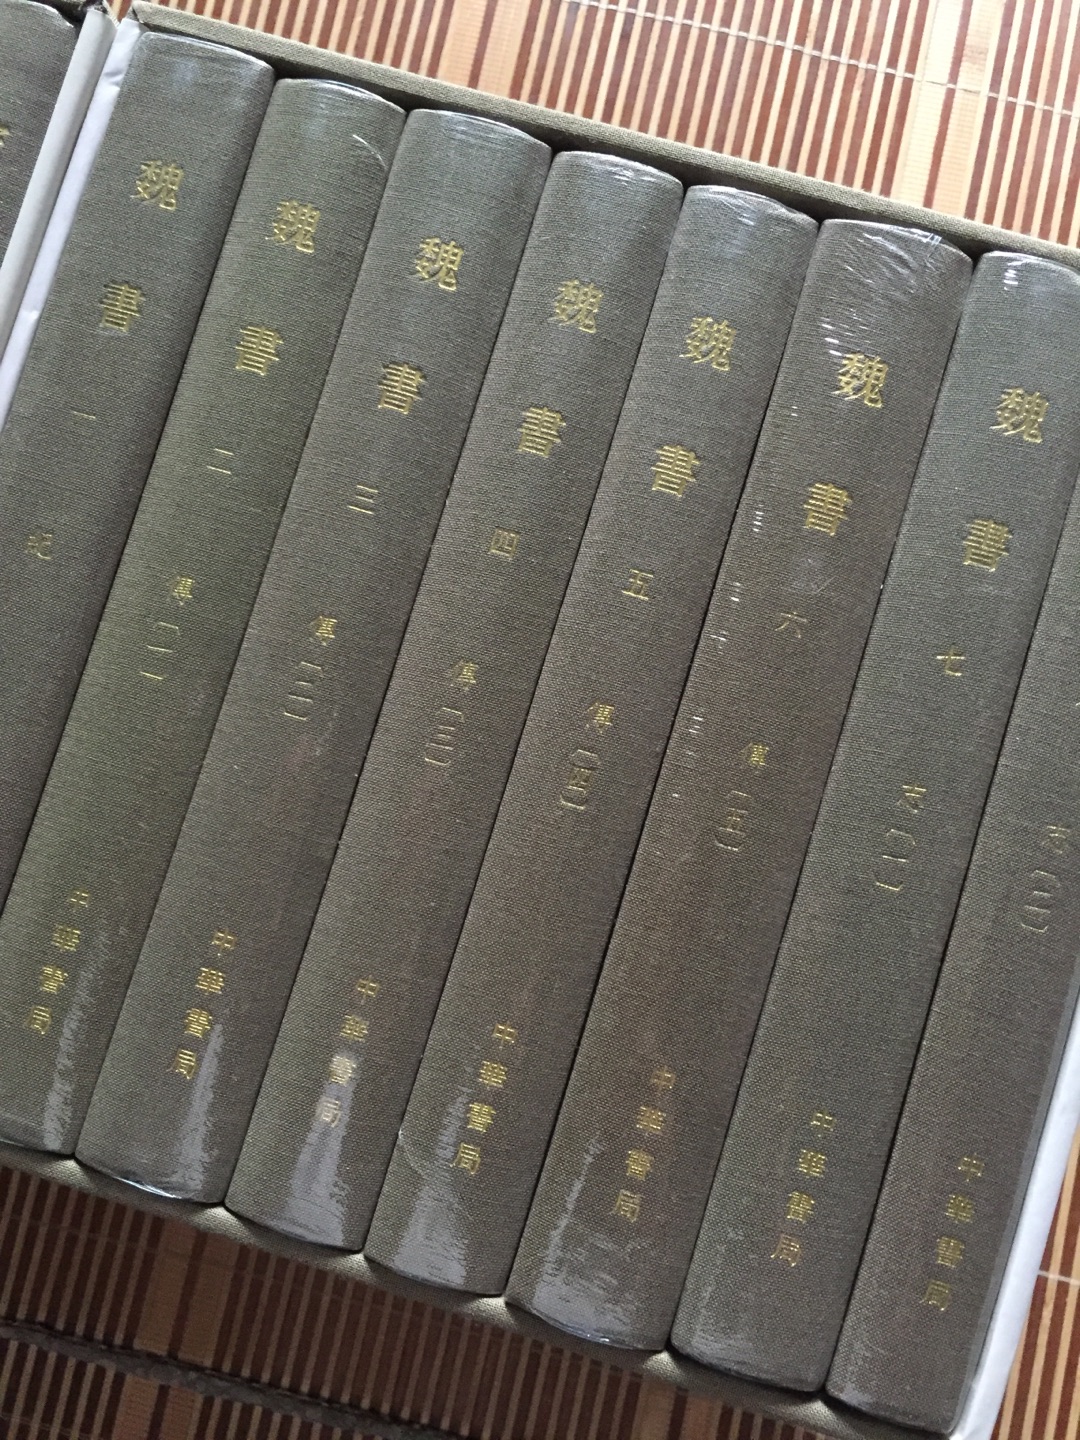 北魏王朝的国史，这套值得收藏，不过不喜欢本书作者魏收的立场与态度。